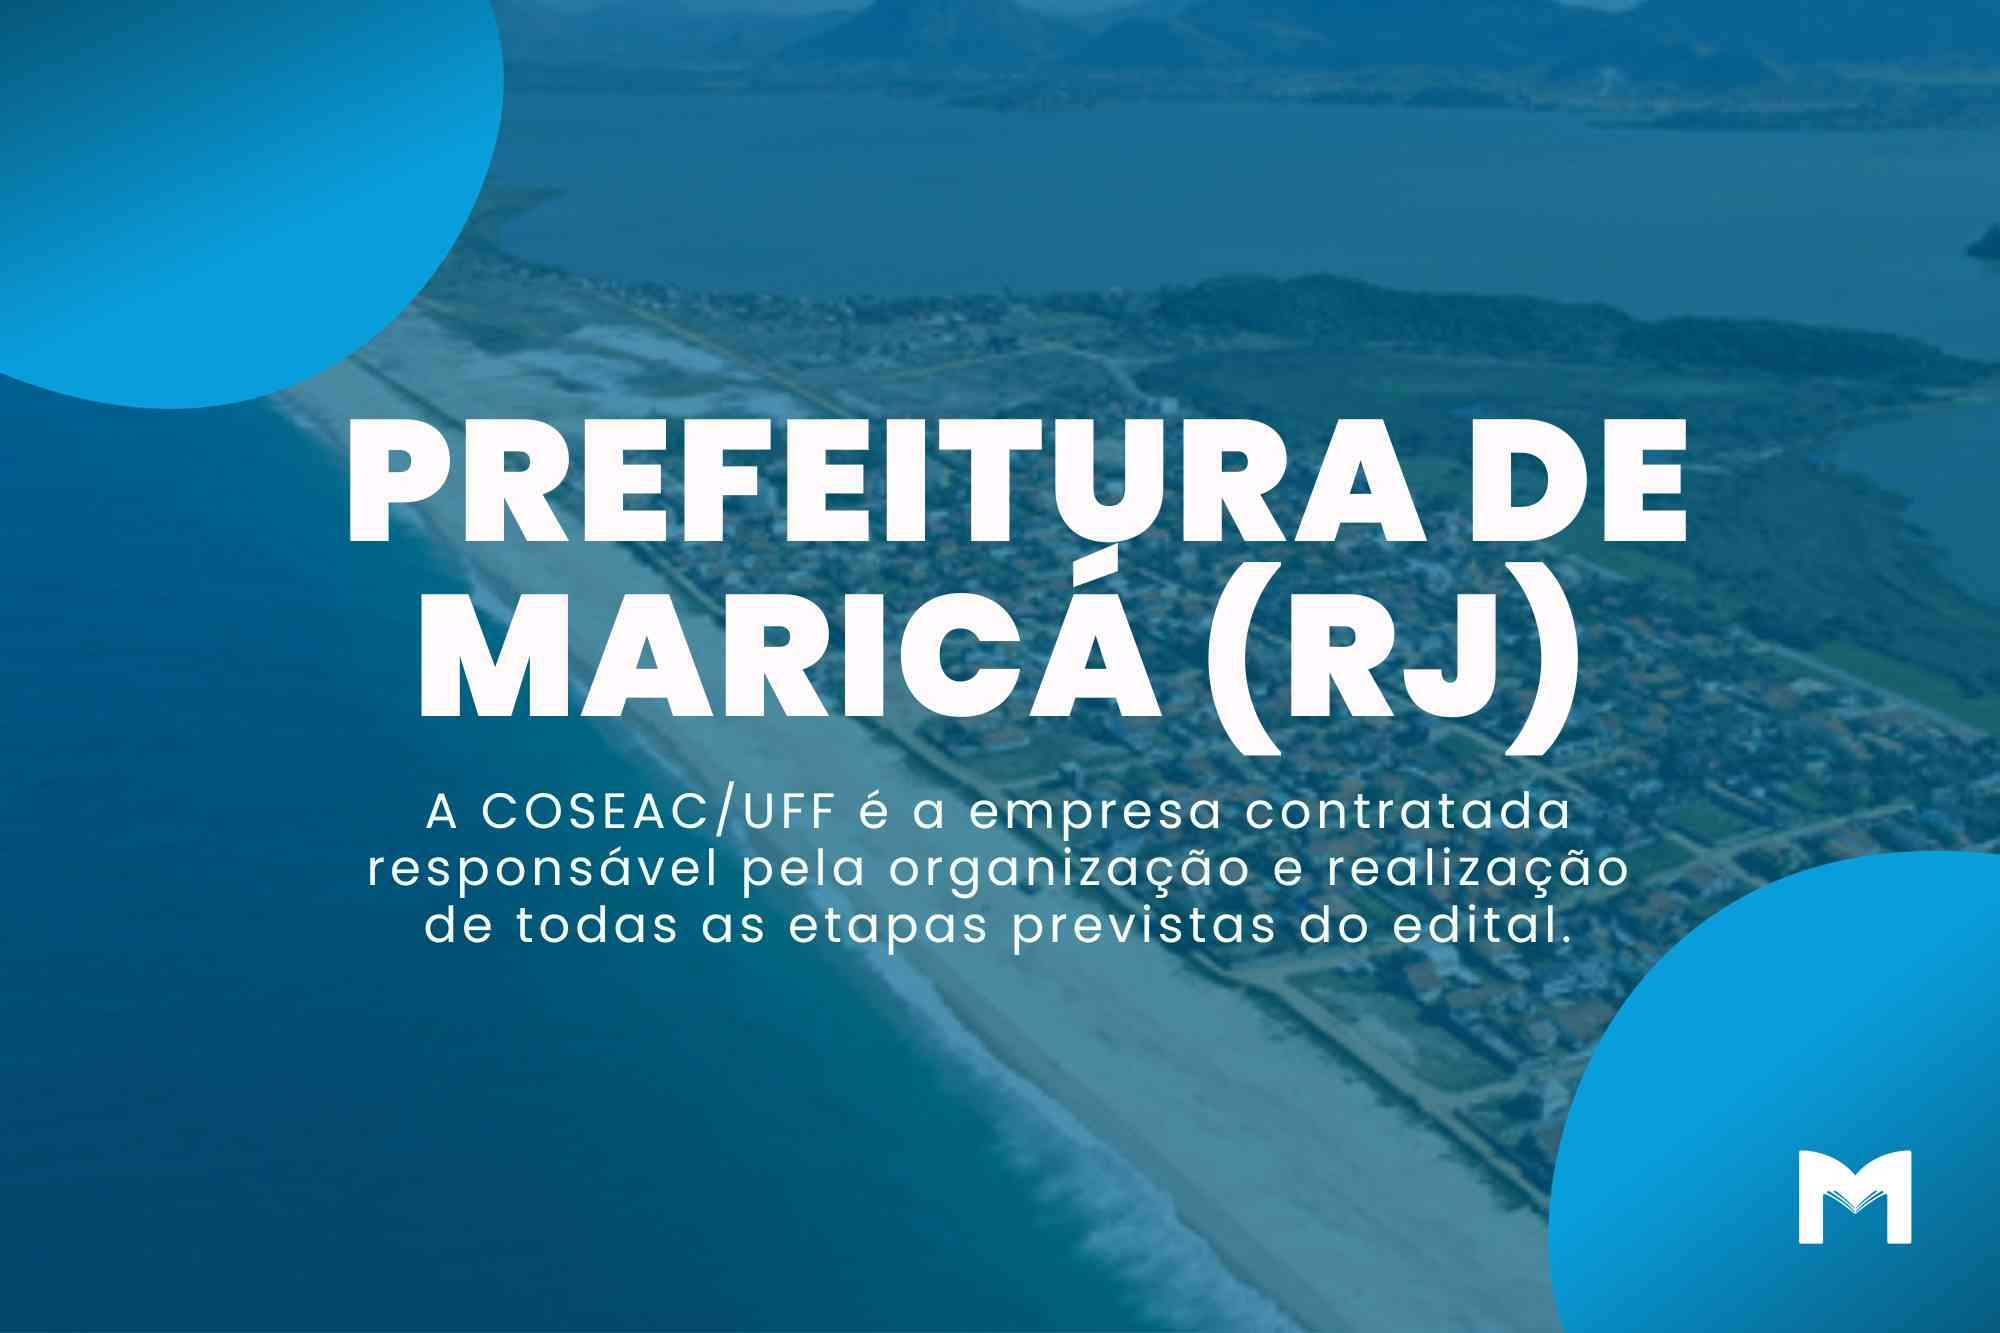 Concurso Prefeitura de Maricá RJ: Vagas para Agente e Analista de Trânsito!